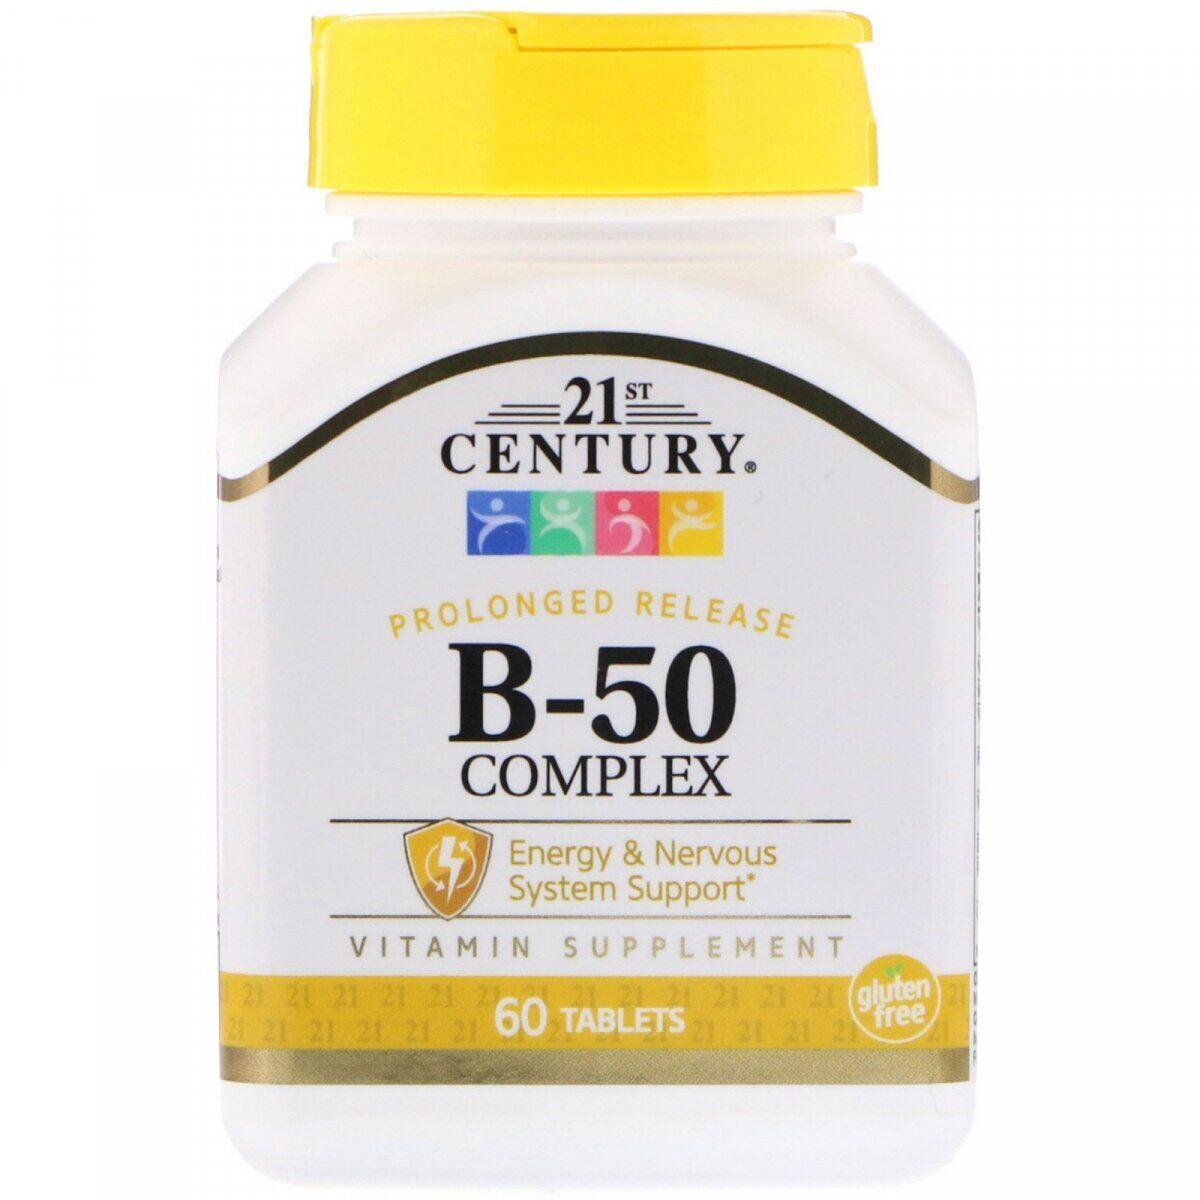 Вітамінна добавка 21st Century B-50 Complex, Prolonged Release, 60 Tabs,  мл, 21st Century. Витамины и минералы. Поддержание здоровья Укрепление иммунитета 